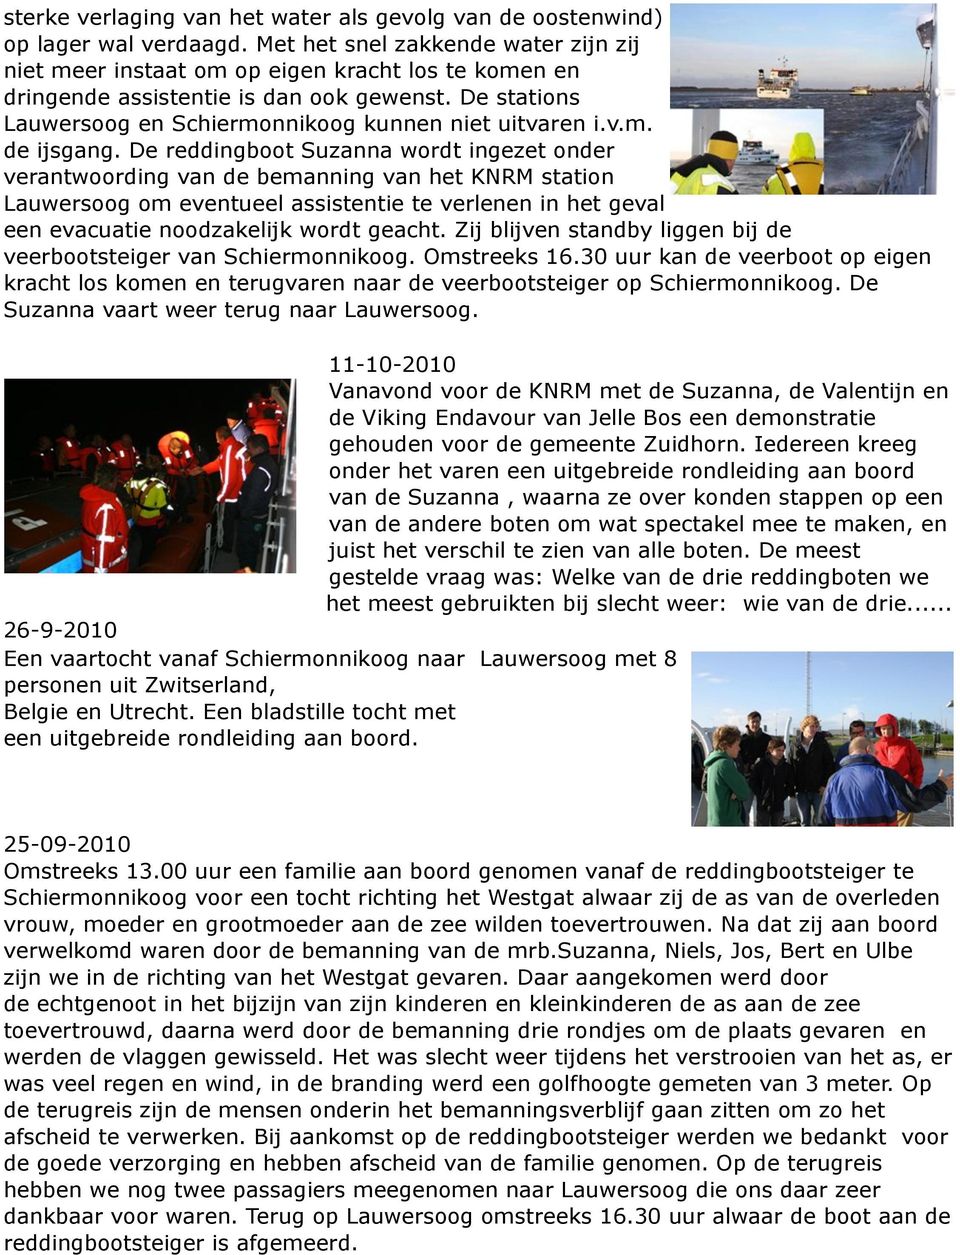 De reddingboot Suzanna wordt ingezet onder verantwoording van de bemanning van het KNRM station Lauwersoog om eventueel assistentie te verlenen in het geval een evacuatie noodzakelijk wordt geacht.